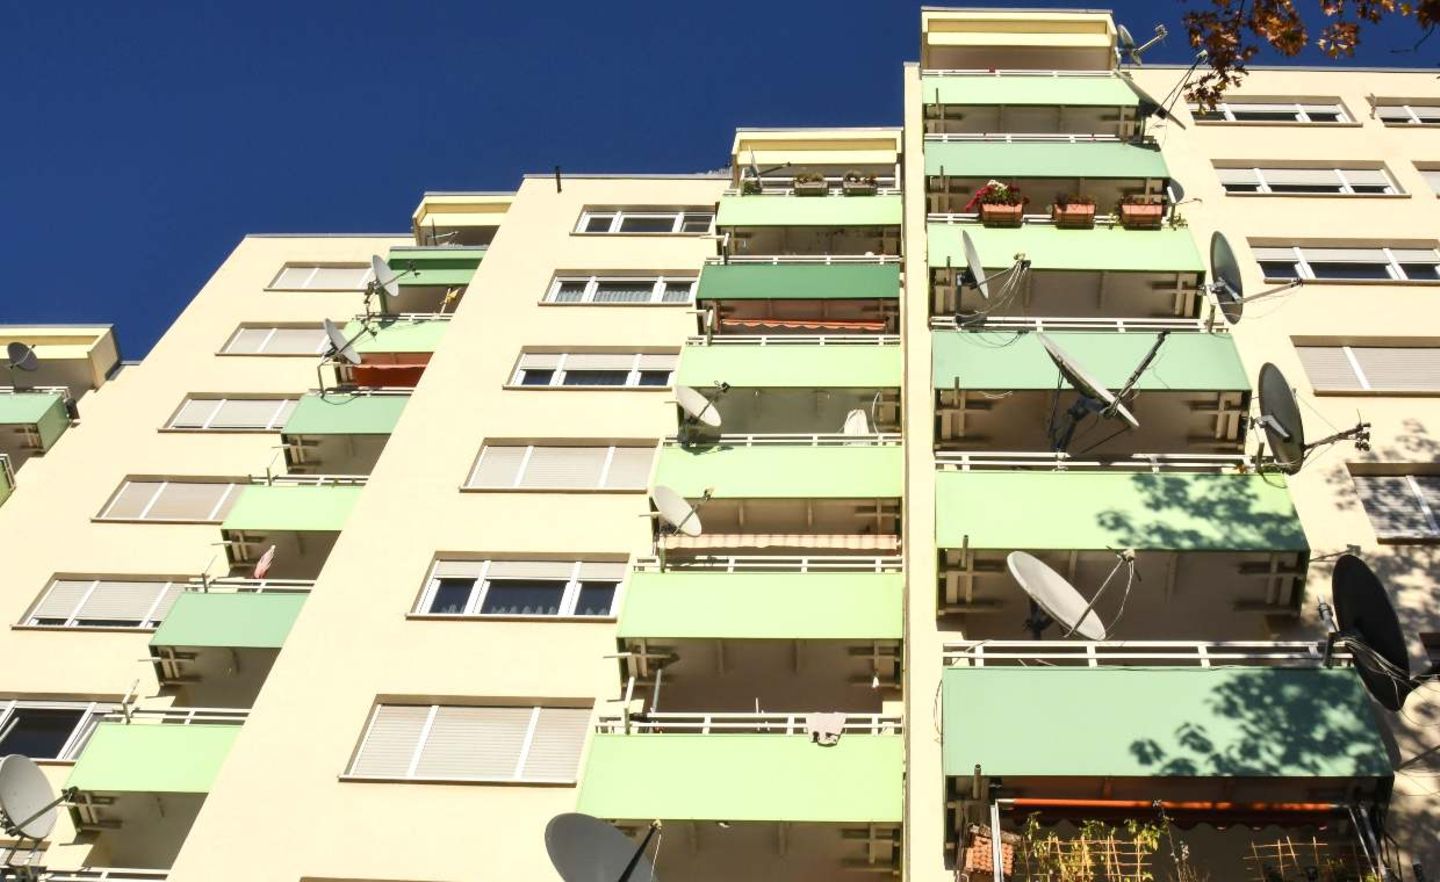 Mietwohnungen und Wohnungen aus sozialem Wohnungsbau im Freiburger Westen. In Deutschland fehlen hunderttausende bezahlbare Wohnungen